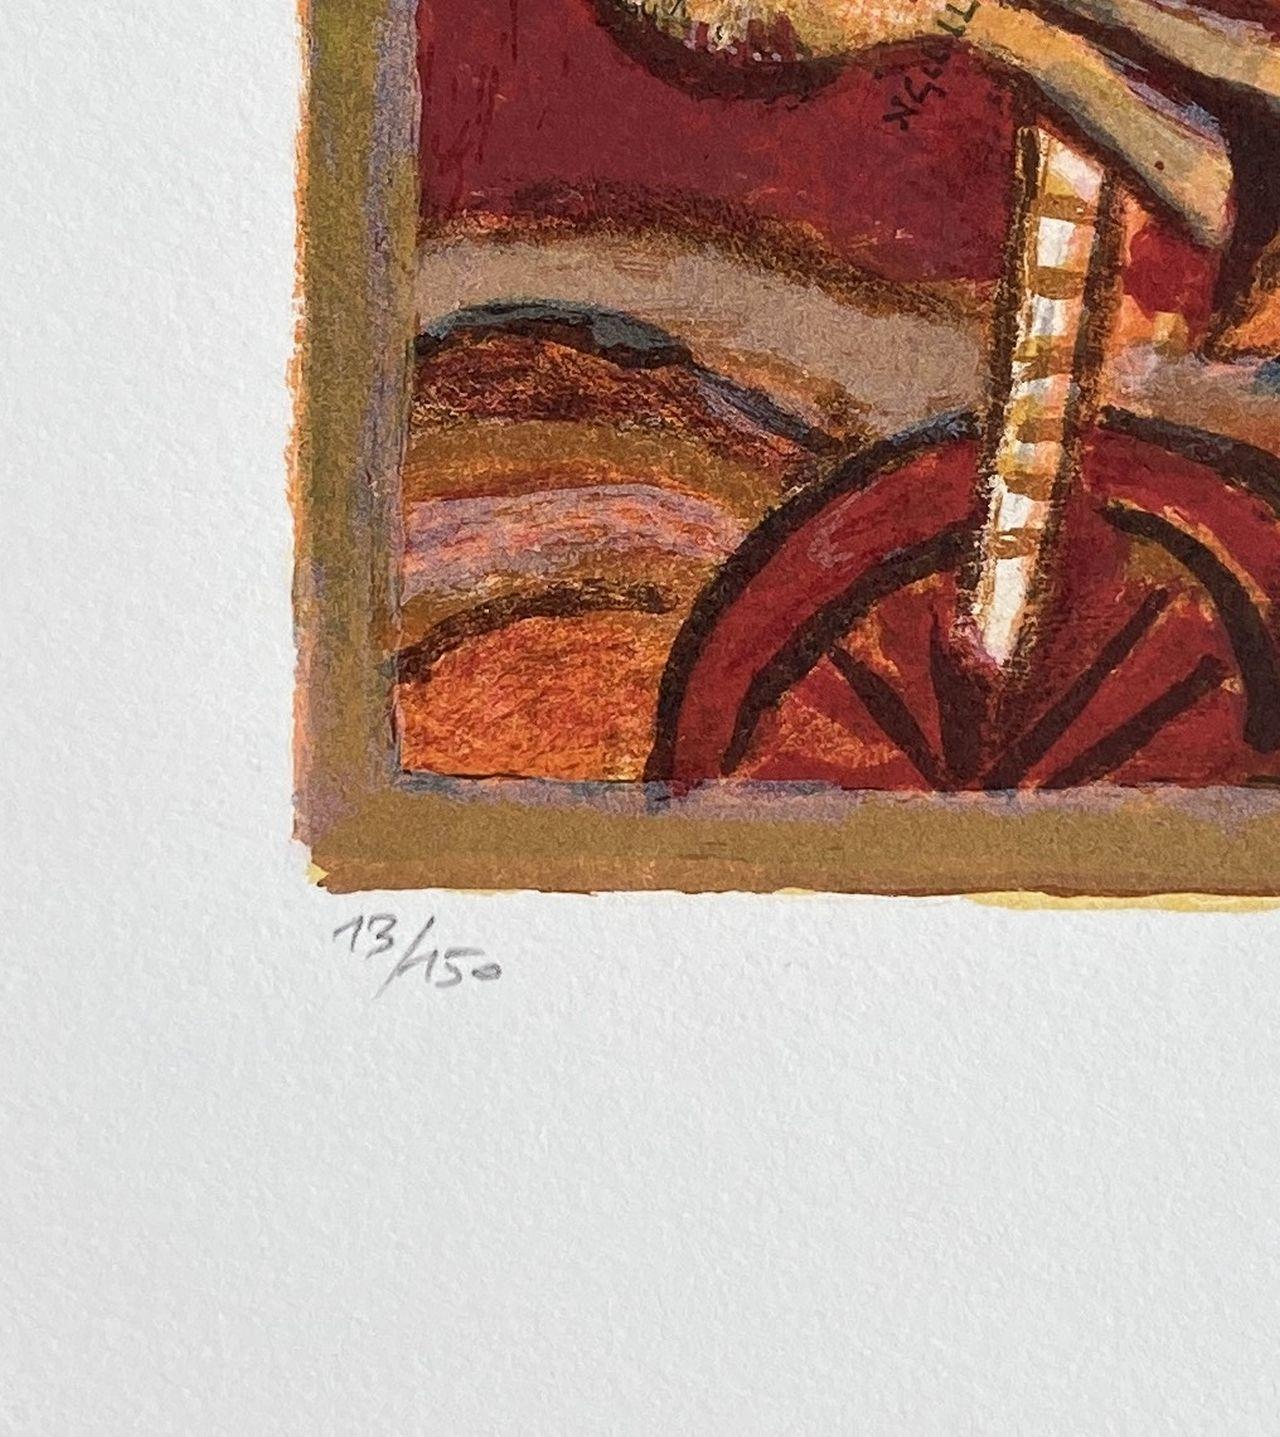 Theo TOBIASSE 
Le Cantique des Cantiques : Femme avec une chaise 

Lithographie originale, 2009 
Signé au crayon par l'artiste. 
Numéroté /150 exemplaires 
Sur vélin de 51 x 35 cm.

Très bon état. 